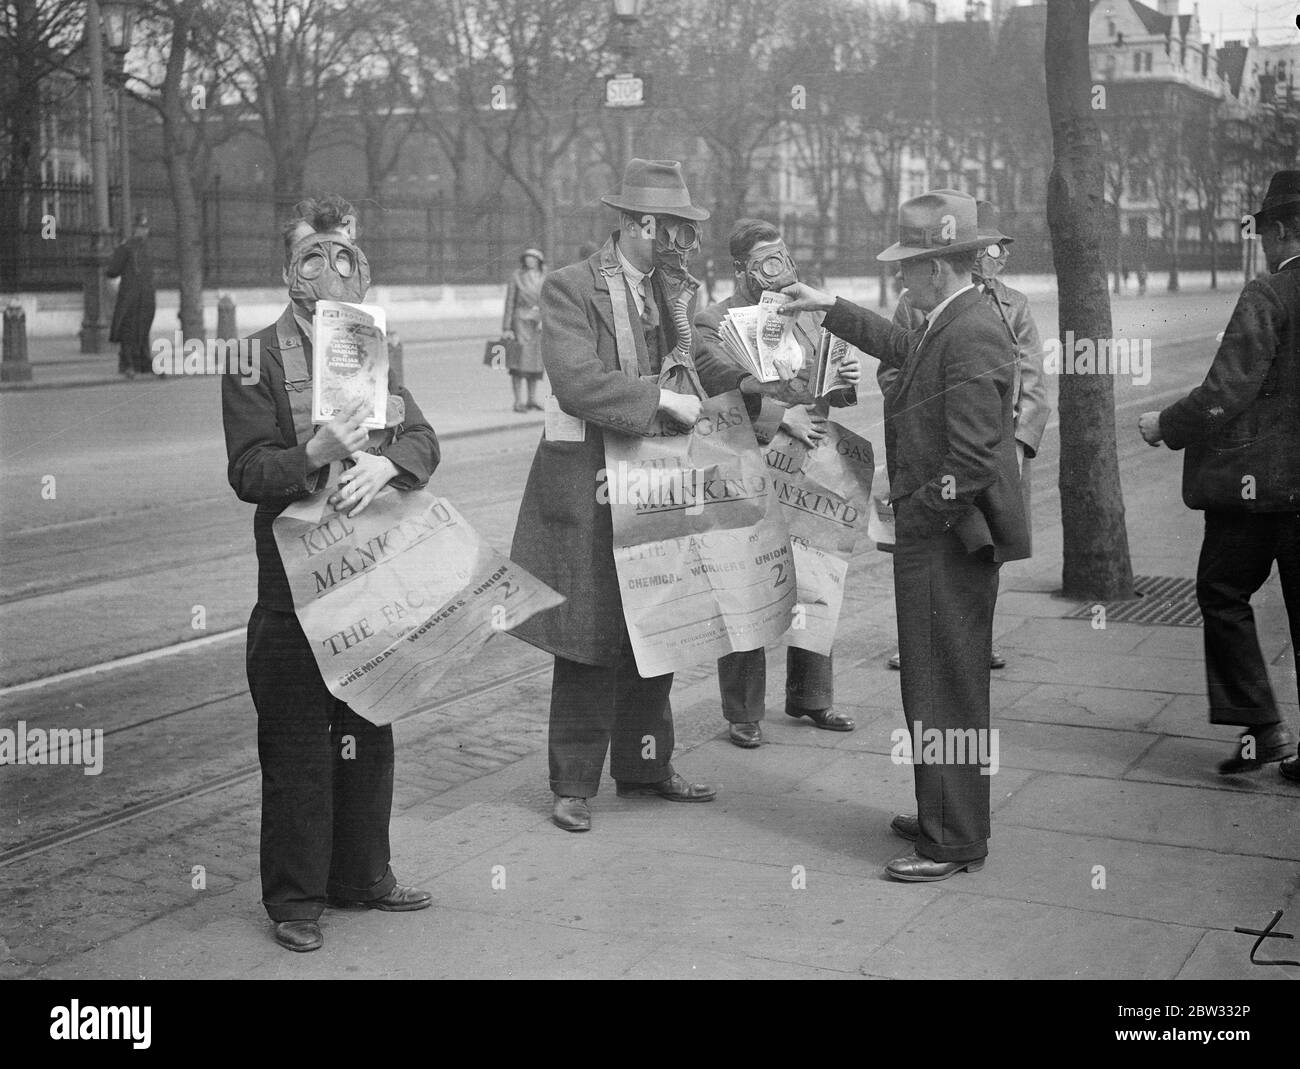 Gasmaskierte Demonstranten veranstalten die Maiparade in London. Demonstranten tragen Gasmasken und traryingplakate drängen auf die Abschaffung der Gas-und chemischen Krieg, leitete die Maifest Parade durch London, die von der Uferstraße begann. Demonstranten weraing Gasmasken marschieren entlang der Embankment, London bei der Demonstration am 1. Mai. 29. April 1932 Stockfoto